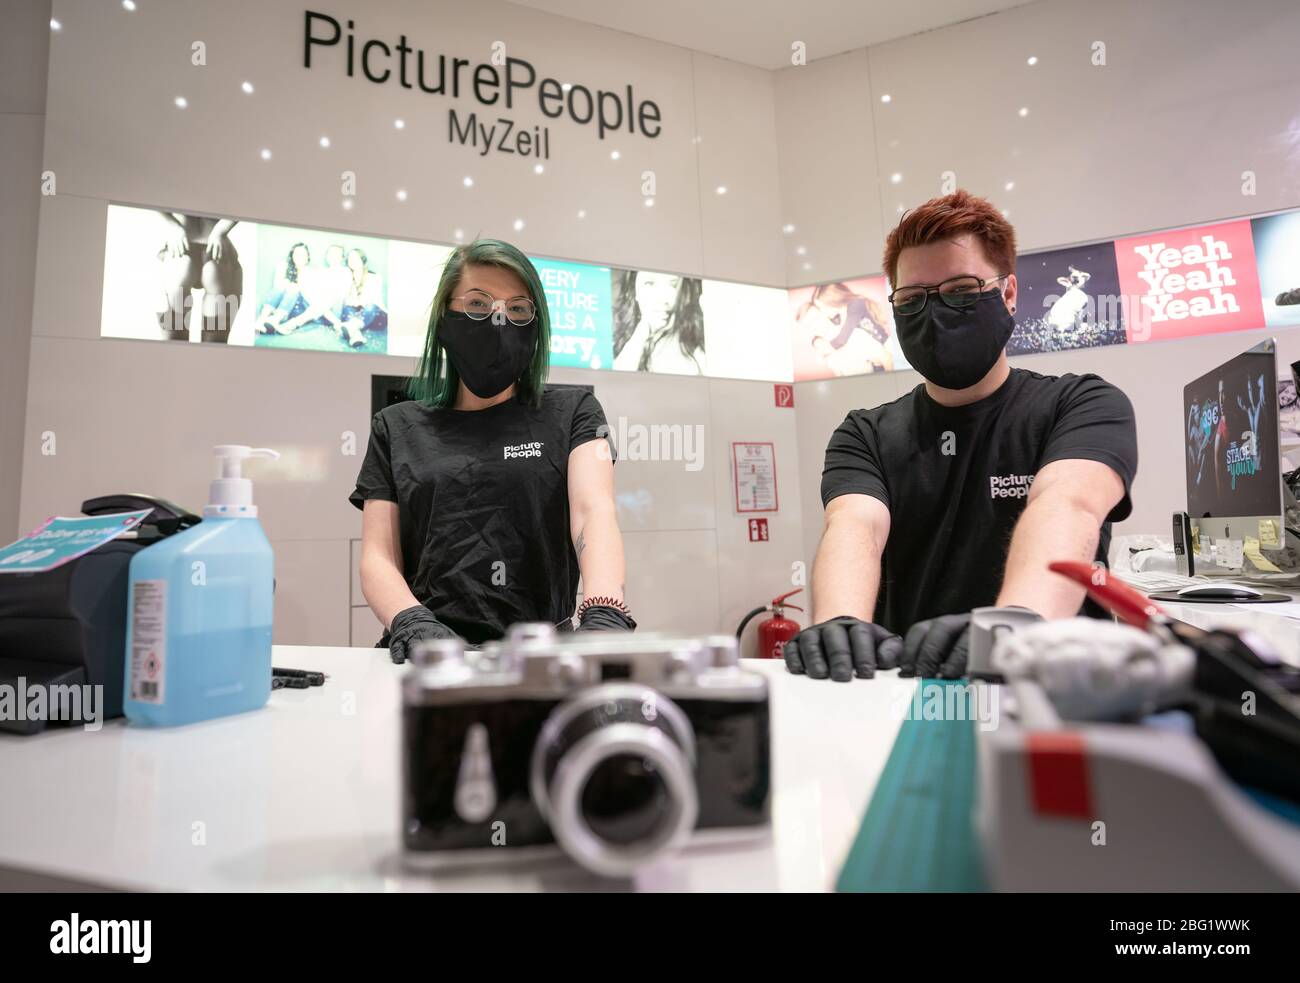 20. April 2020, Hessen, Frankfurt/Main: Sarina Weber (l.) und Sven  Fleischmann stehen hinter der Theke in einem Laden für Porträtfotografie im  Einkaufszentrum 'MyZeil', das nach wochenlanger Schließung aufgrund der  Corona-Pandemie wieder eröffnet